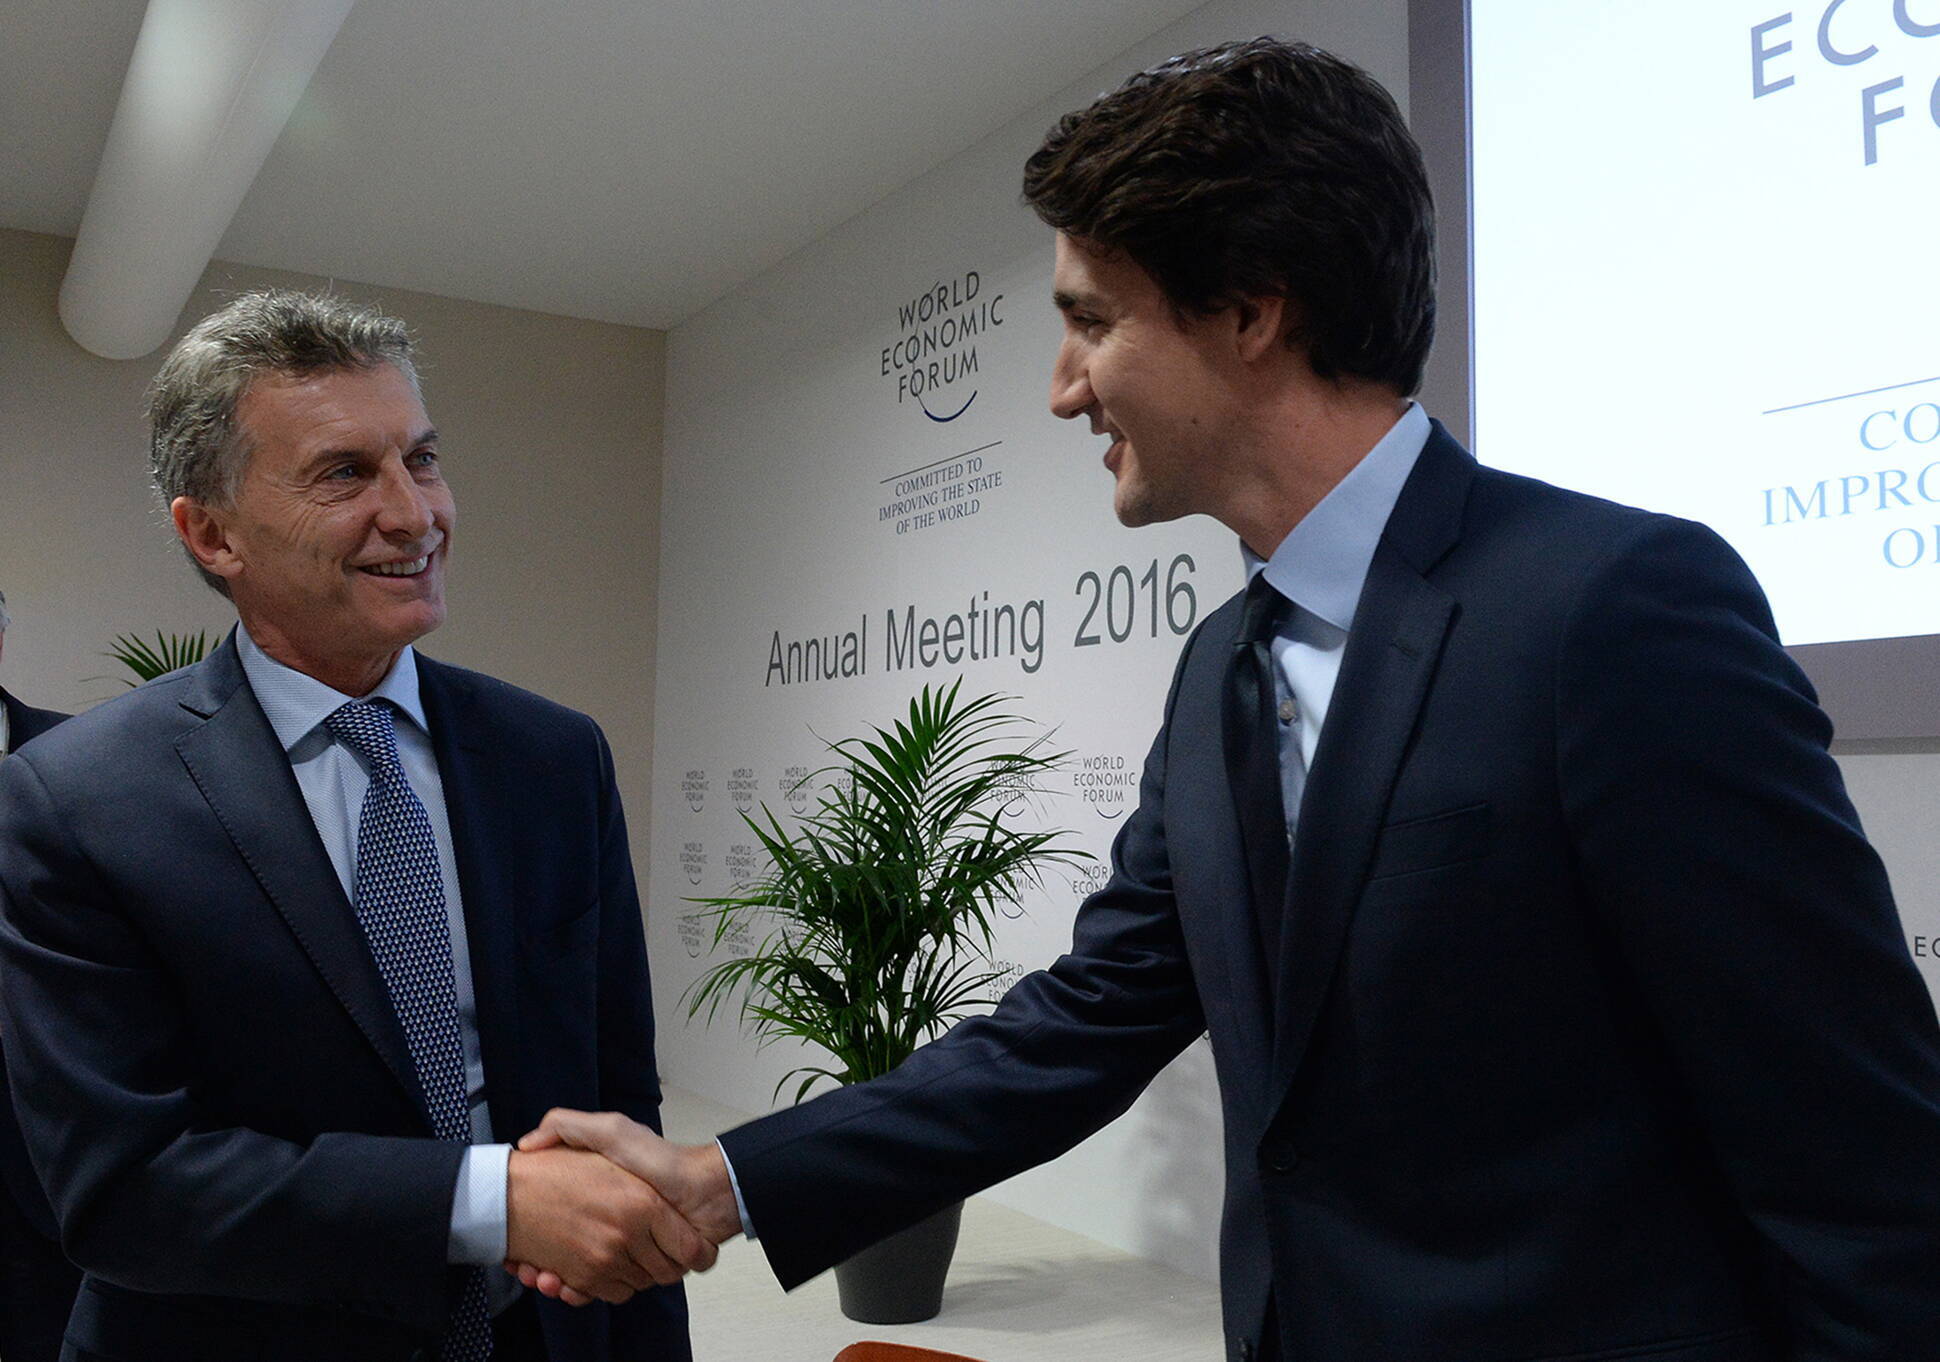 El Presidente saludó al primer ministro de Canadá, Justin Pierre James Trudeau en Davos